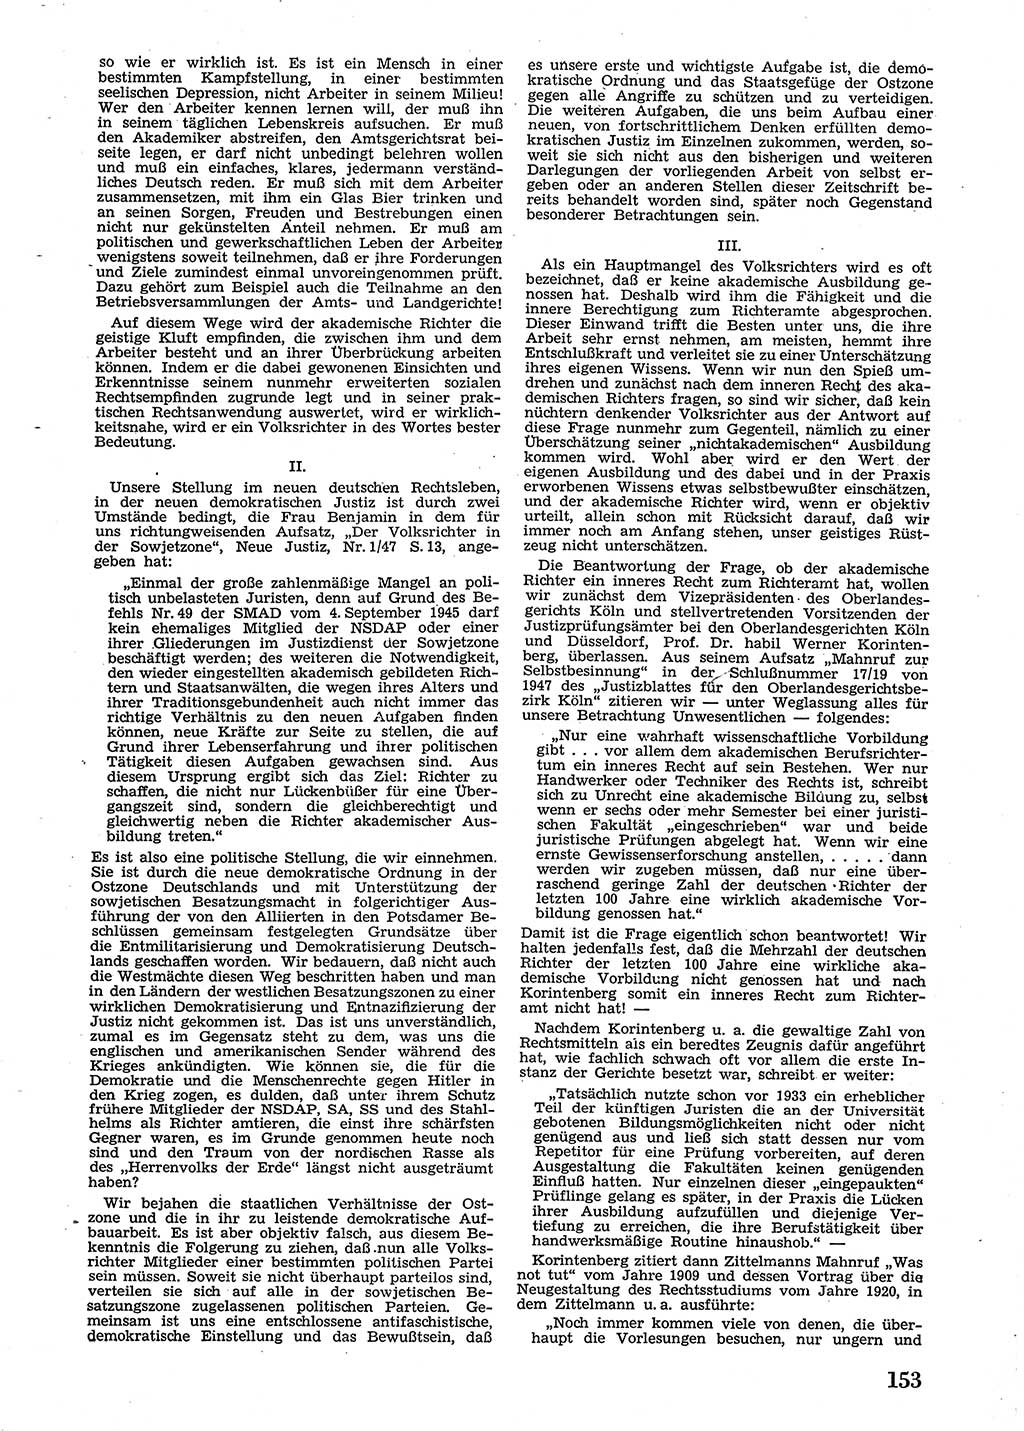 Neue Justiz (NJ), Zeitschrift für Recht und Rechtswissenschaft [Sowjetische Besatzungszone (SBZ) Deutschland], 2. Jahrgang 1948, Seite 153 (NJ SBZ Dtl. 1948, S. 153)